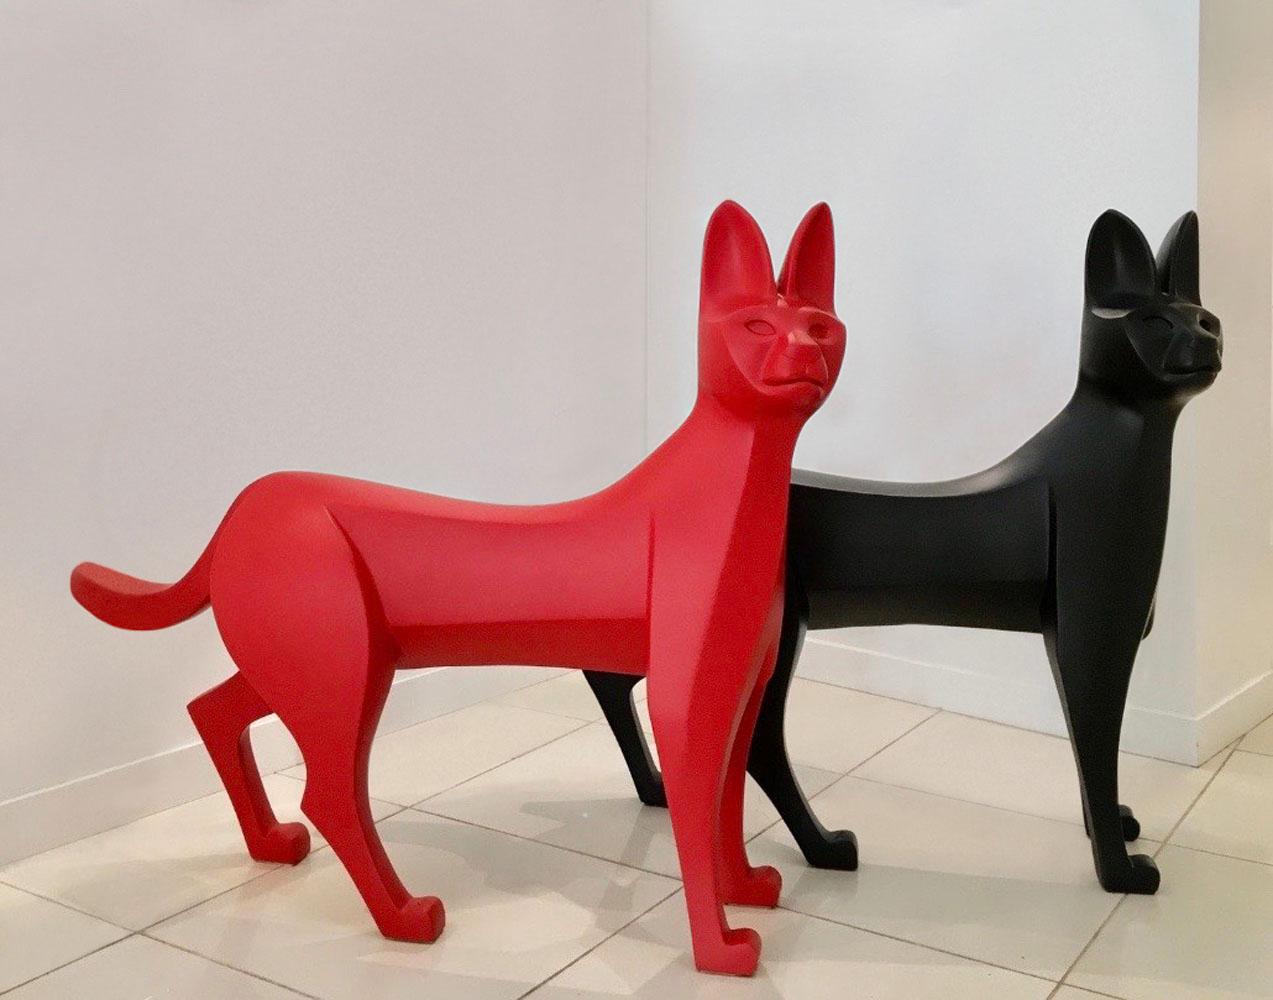 Sculpture en polyester, 2018. 110 cm × 135 cm × 30 cm. Cette sculpture fonctionnelle de chat sauvage peut être utilisée comme banc.
Couleurs disponibles : noir, rouge, bleu et blanc.
Édition limitée à 8 exemplaires + 4 épreuves d'artiste. 